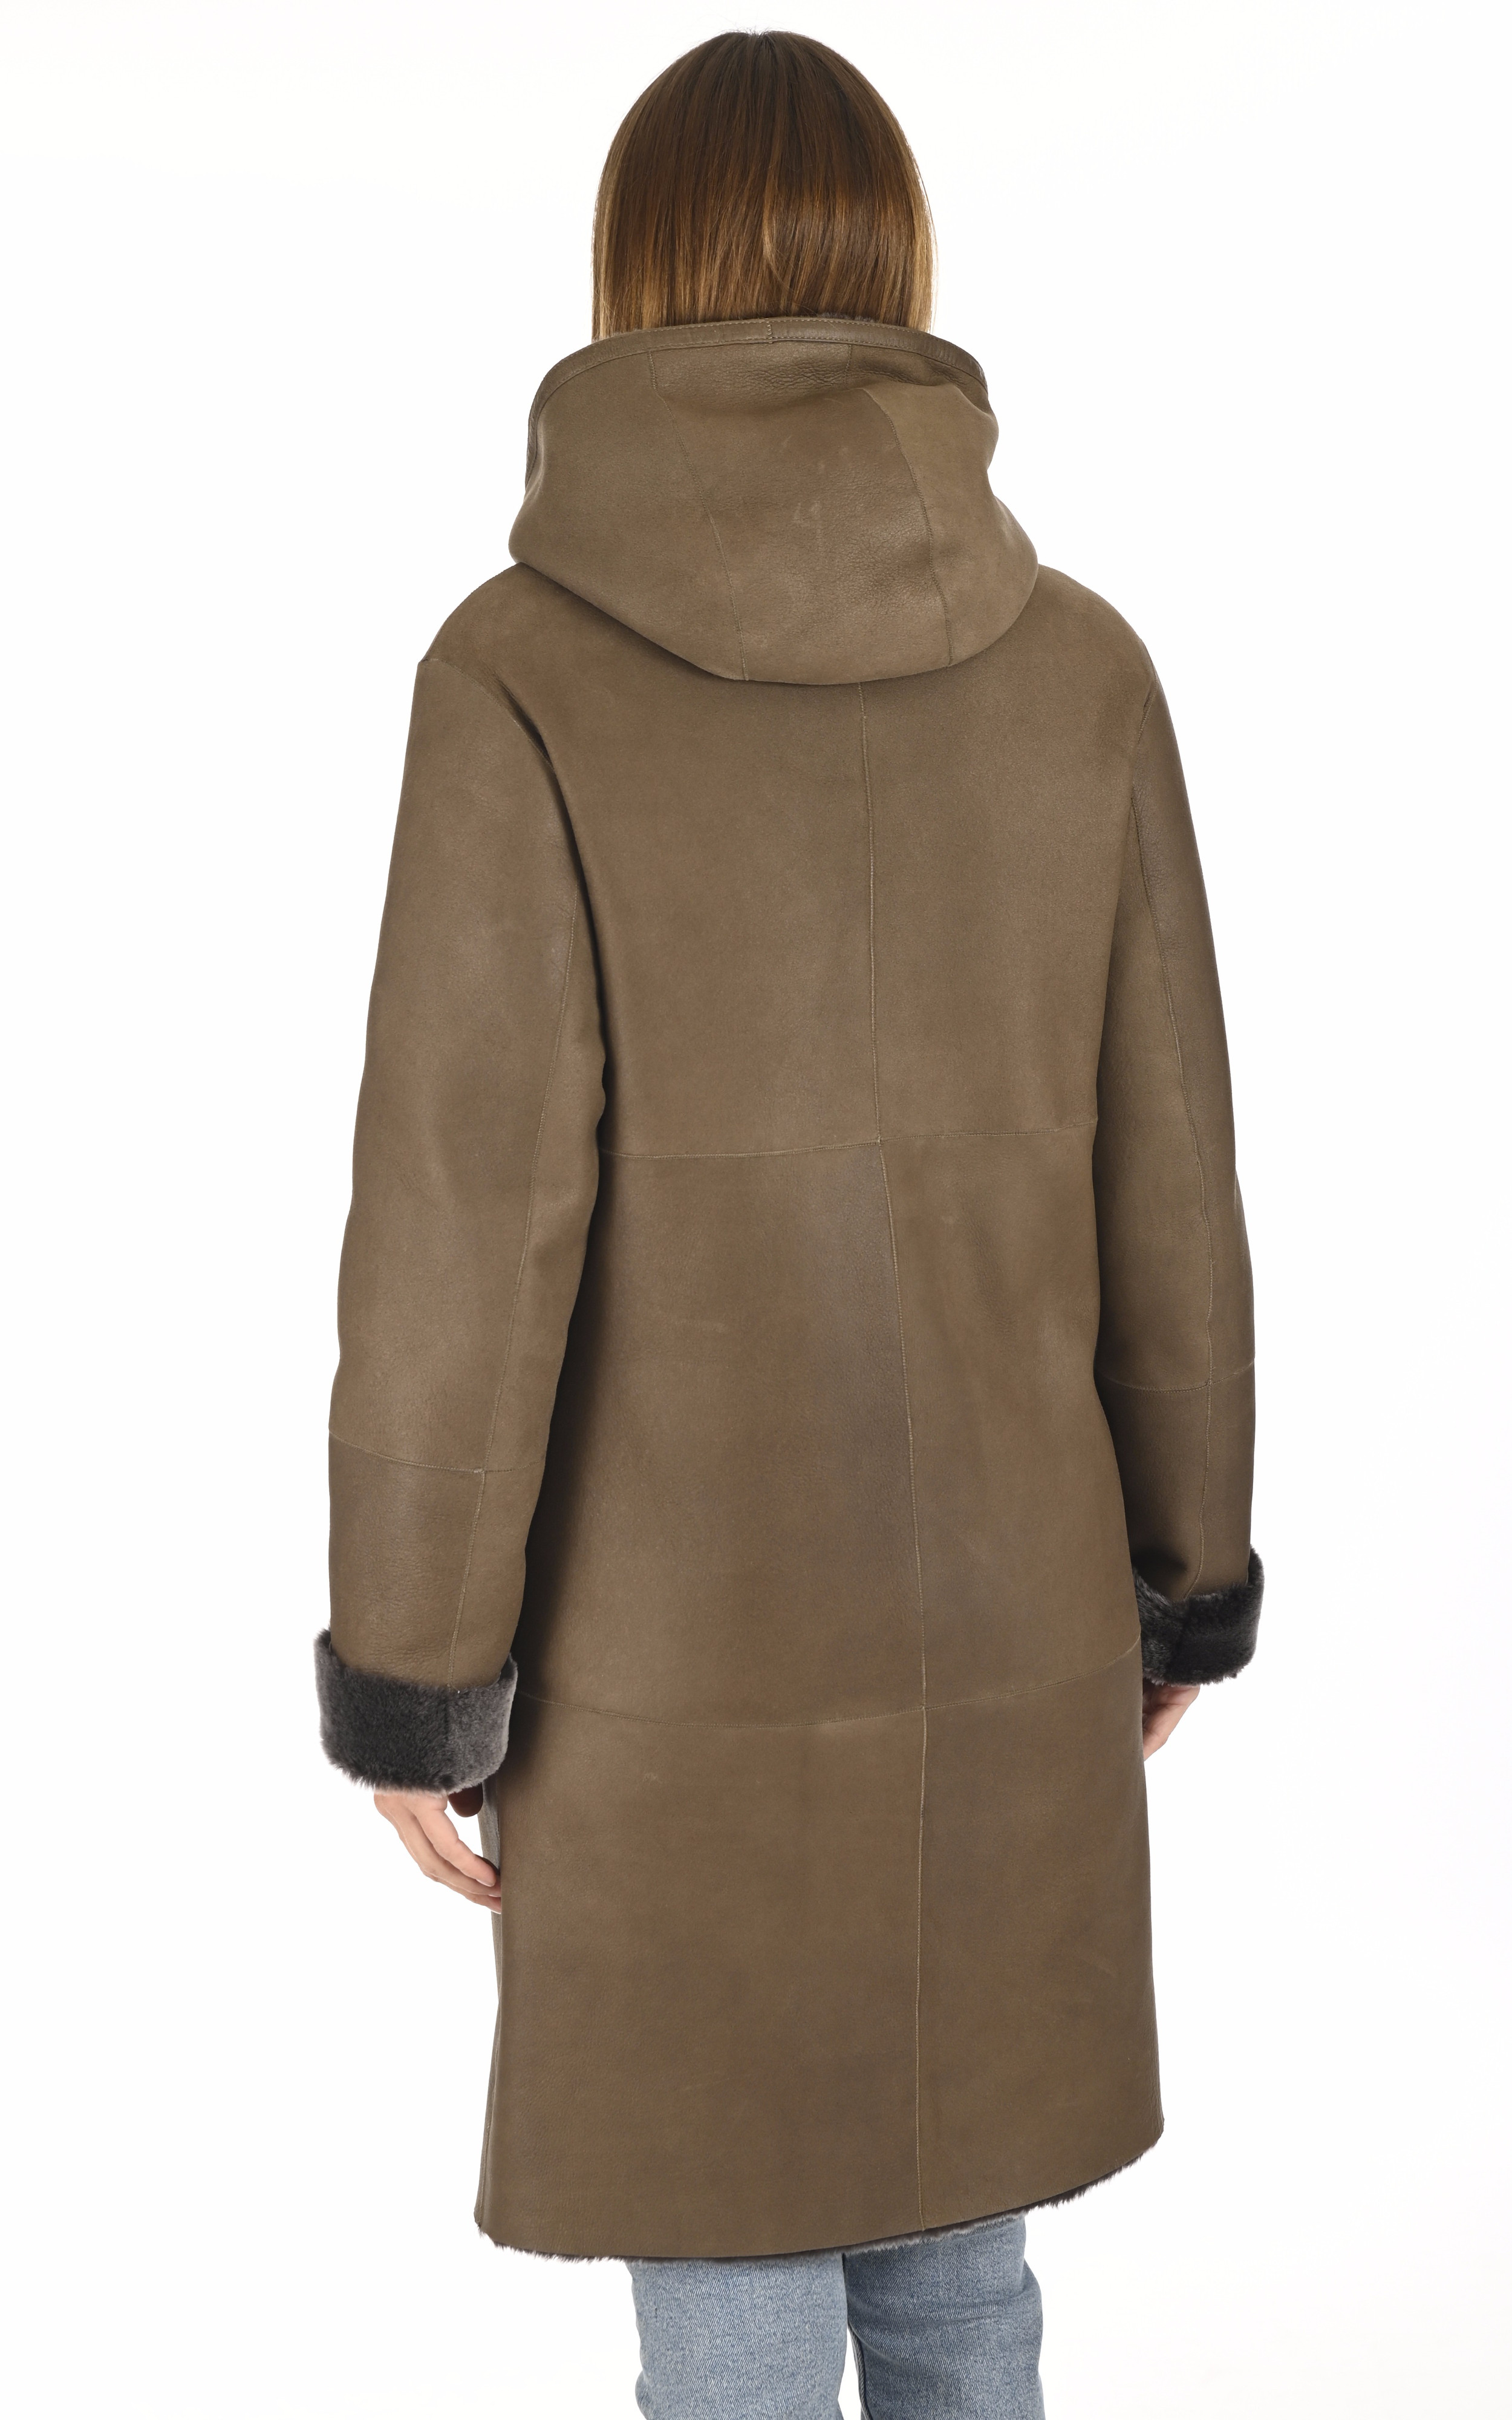 Manteau peau lainée bronze La Canadienne